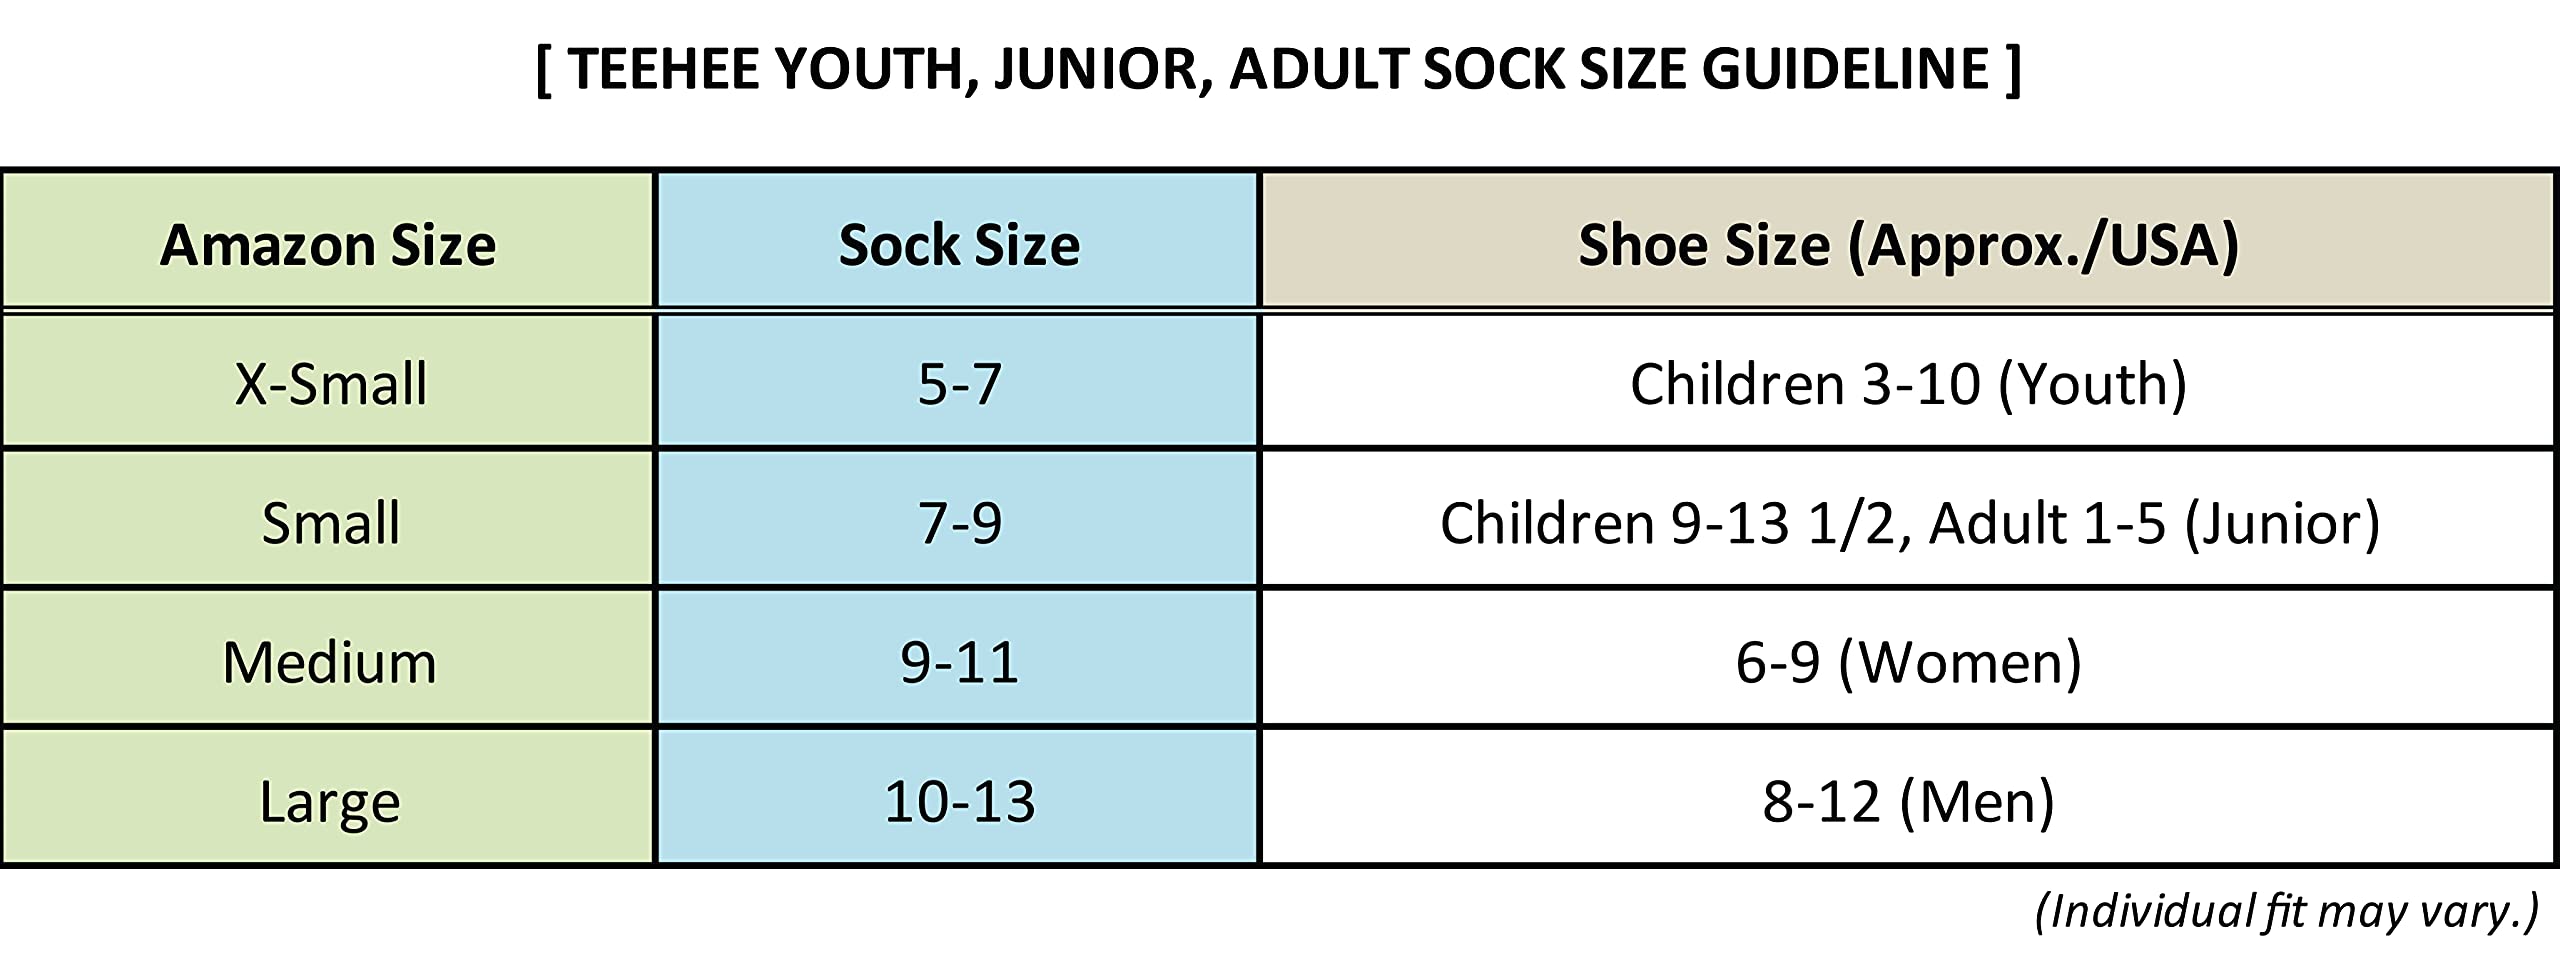 Soccer Socks Athletic Sports Socks Softball Baseball Cushioned Knee High Tube Socks Kids Teens Women Men Unisex